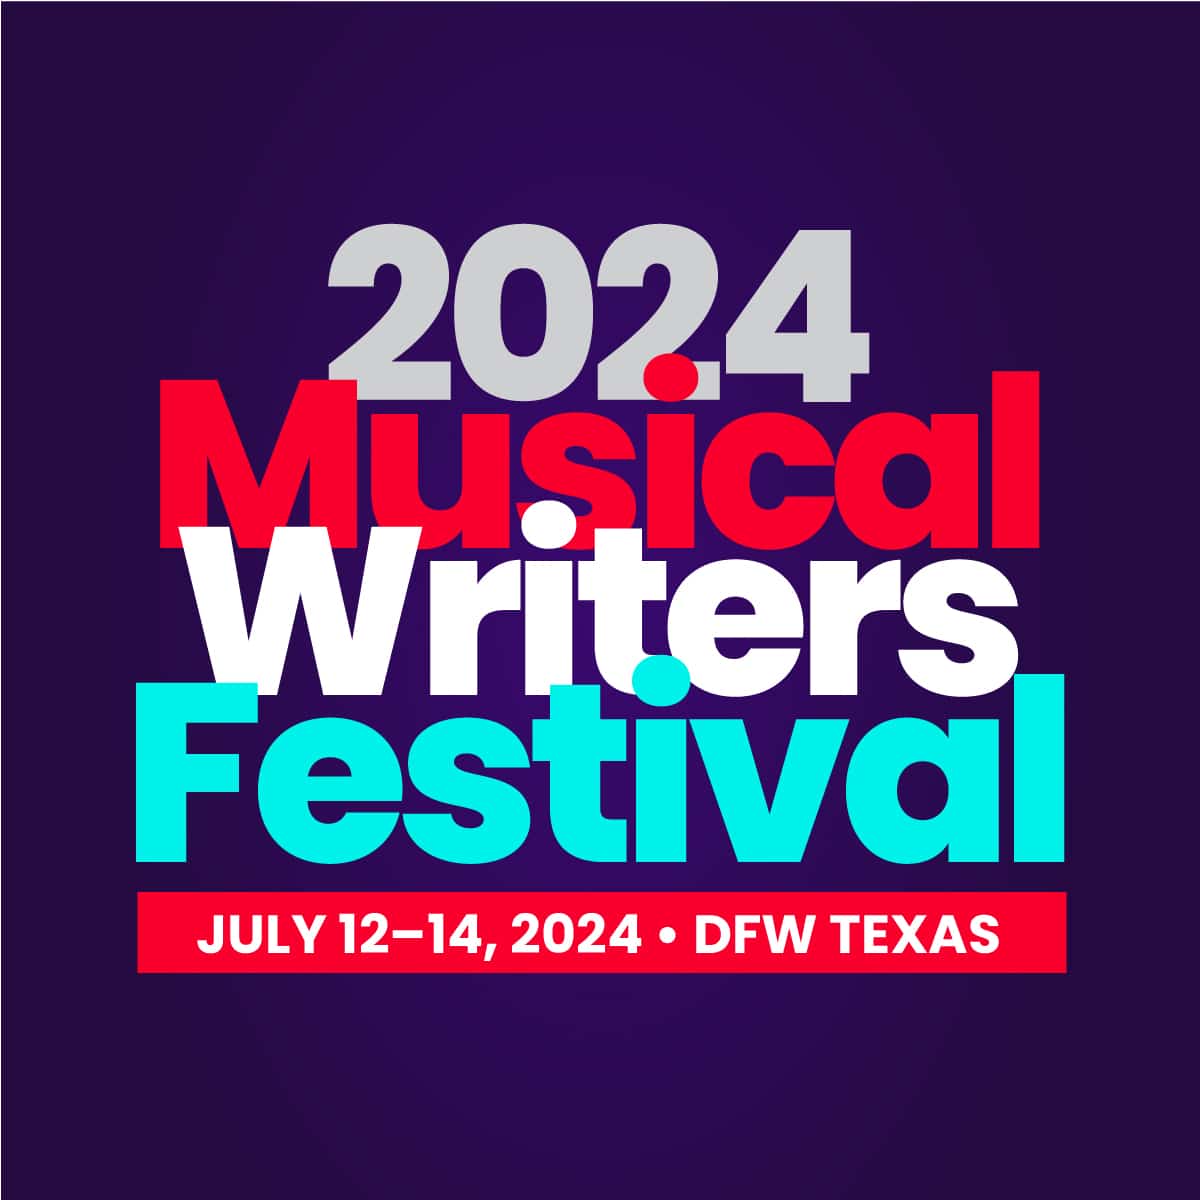 2024 Musical Writers Festival logo